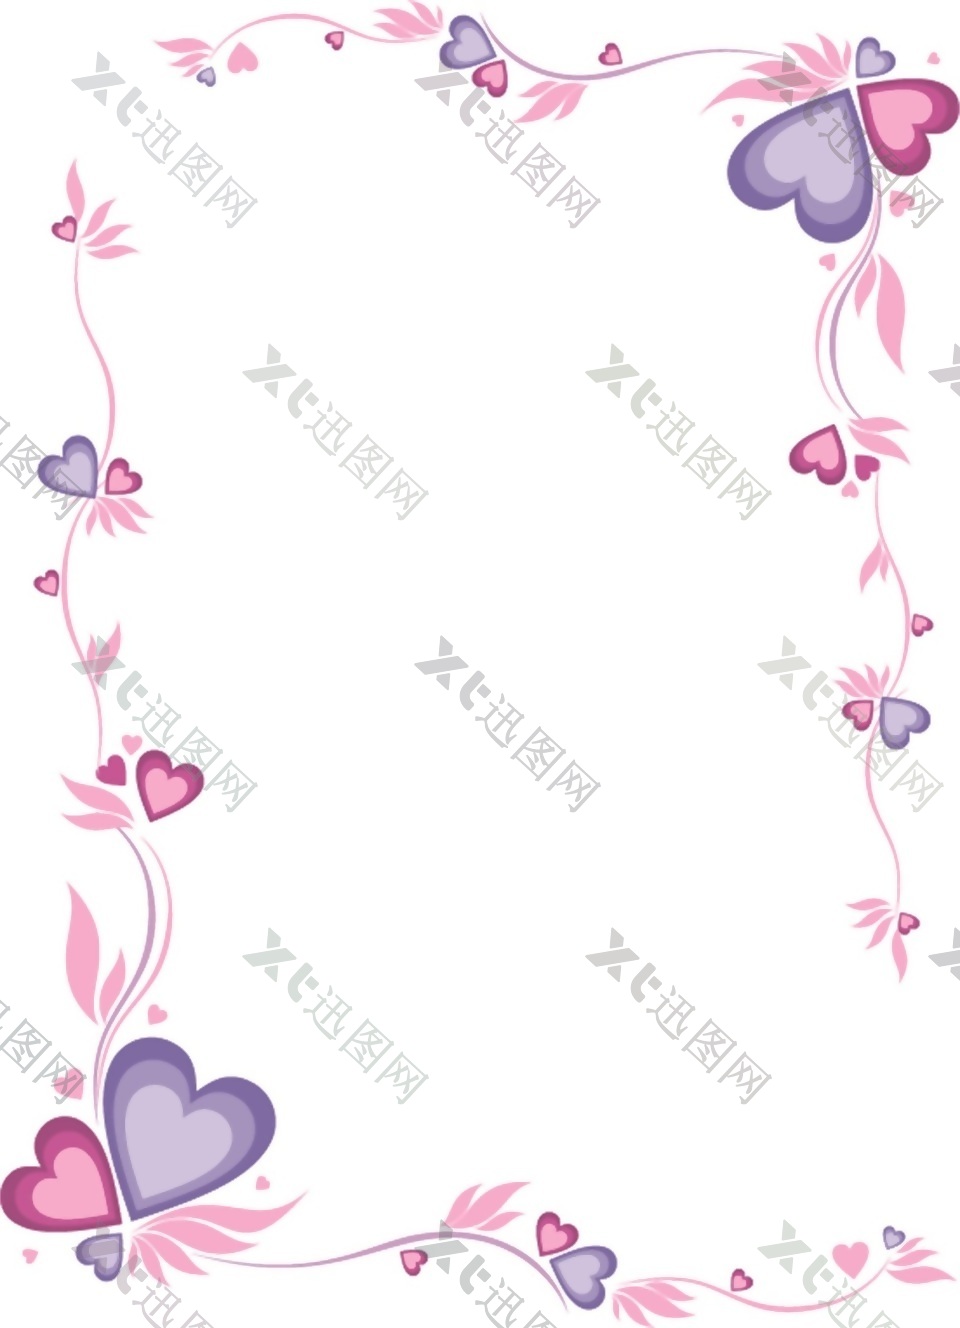 粉紫色花朵印花矢量素材